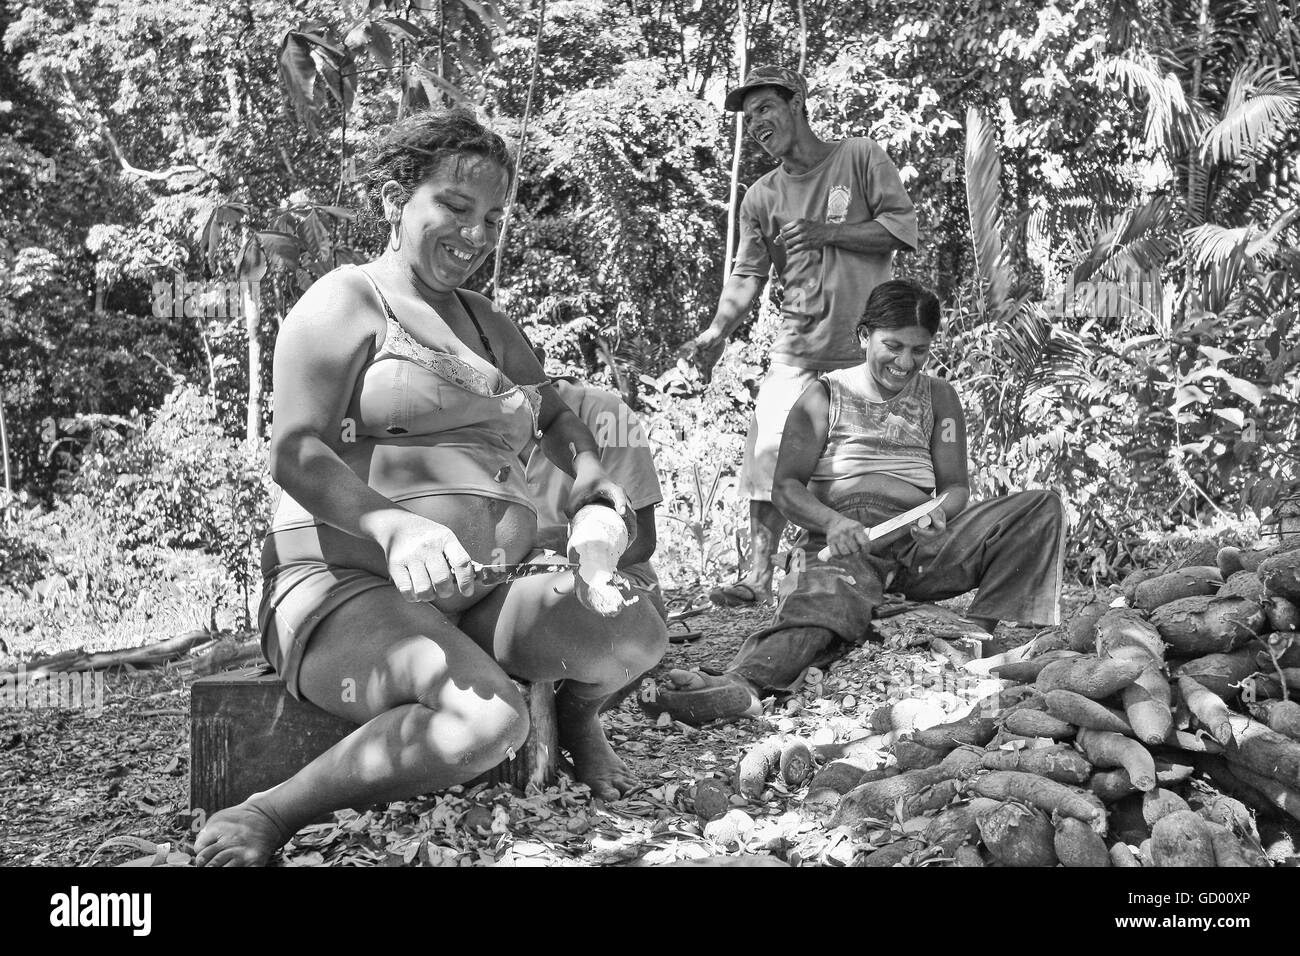 Immagine in bianco e nero di persone indigene peeling radici di manioca. Foto Stock